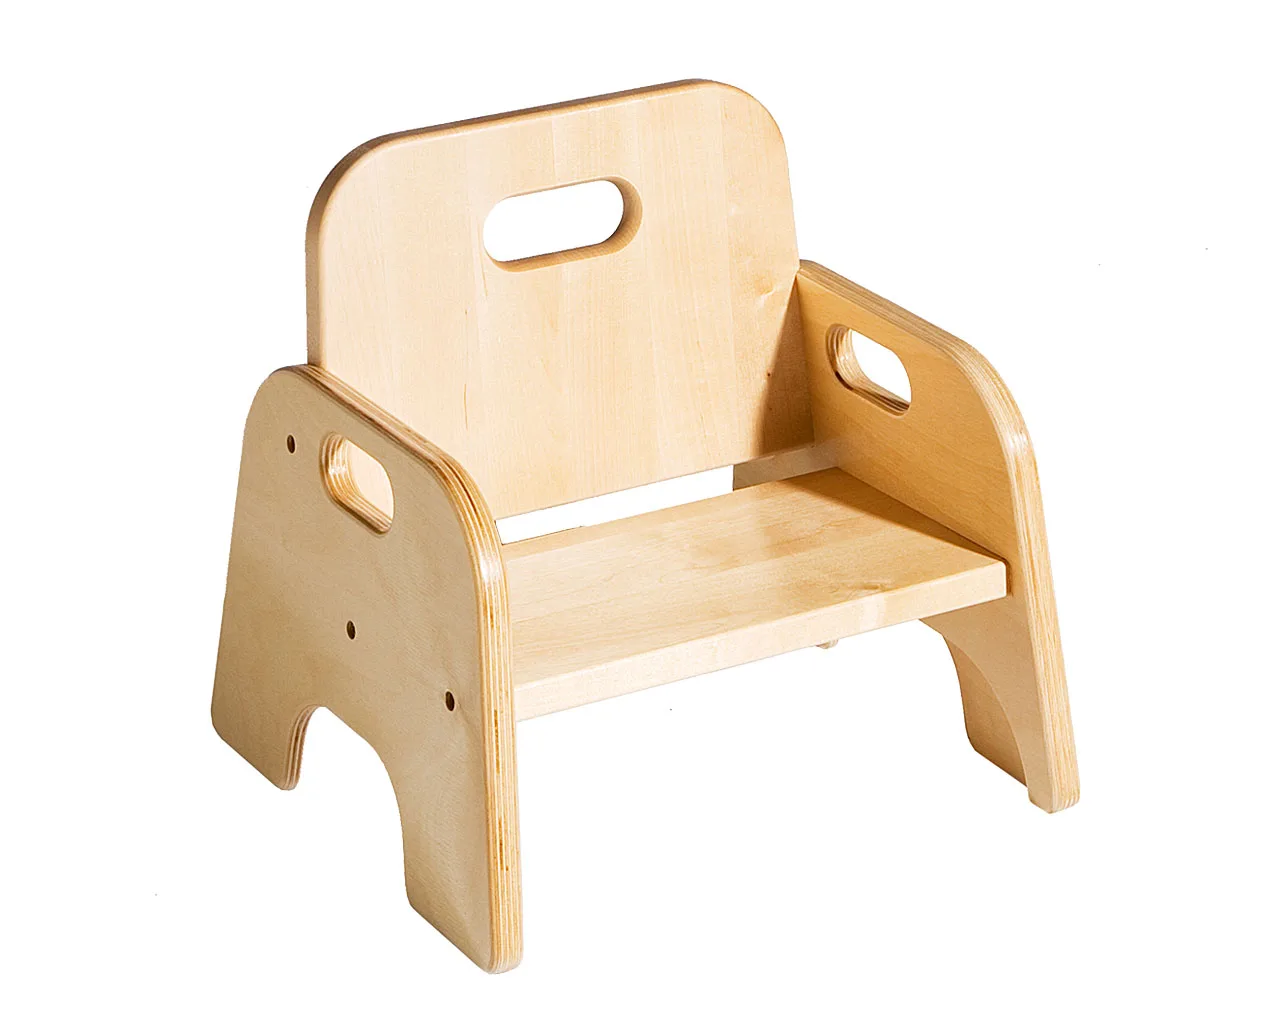 деревянный стульчик своими руками для ребенка